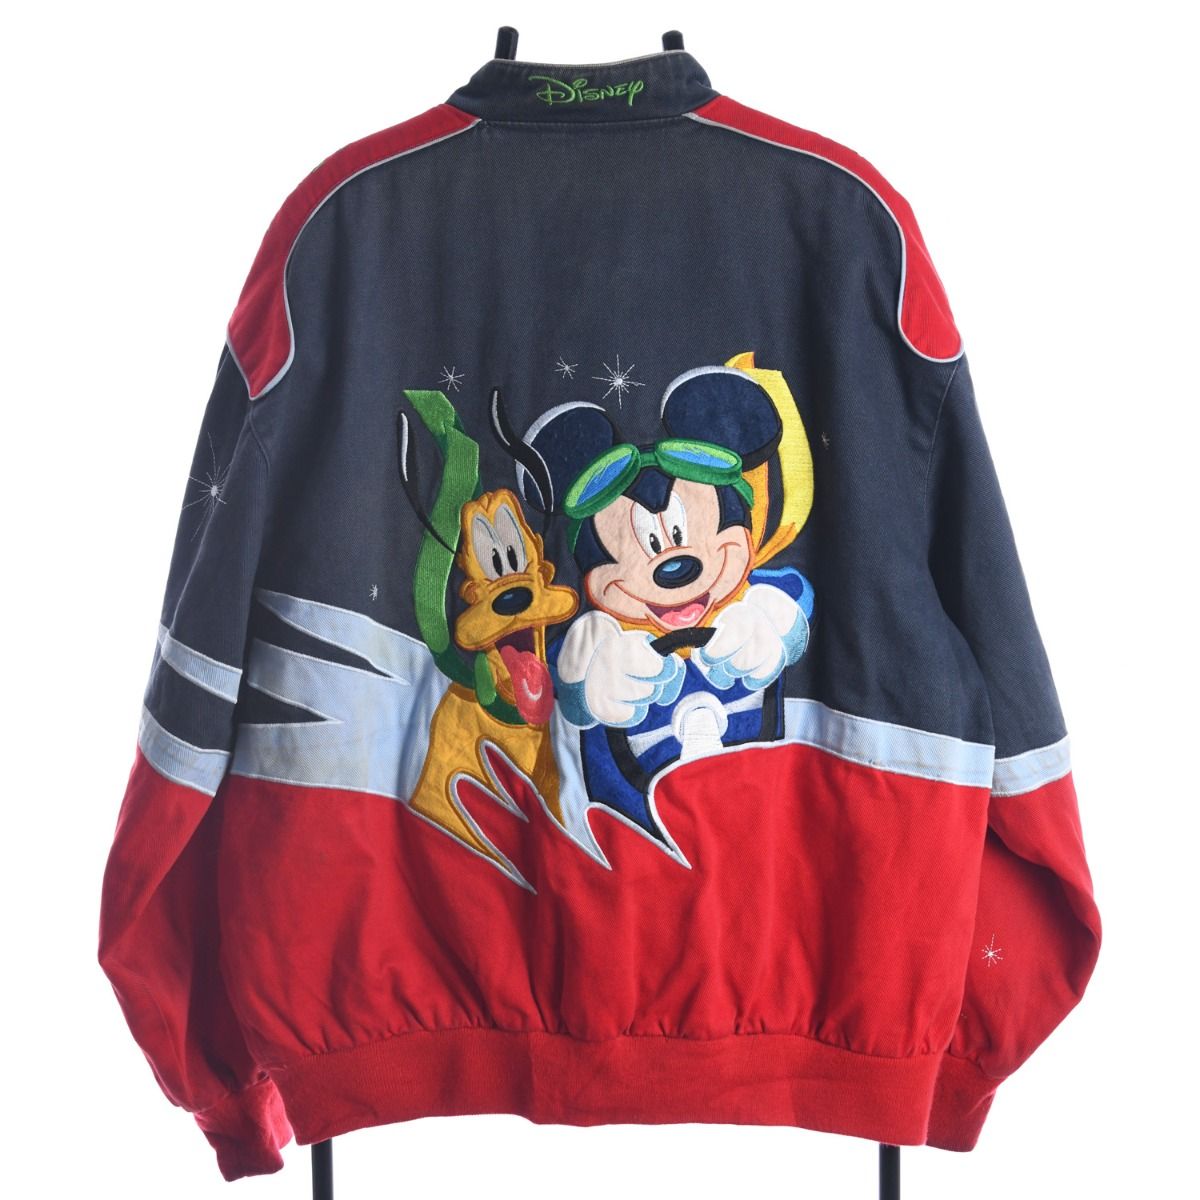 NASCAR Mickey & Friends Jacket